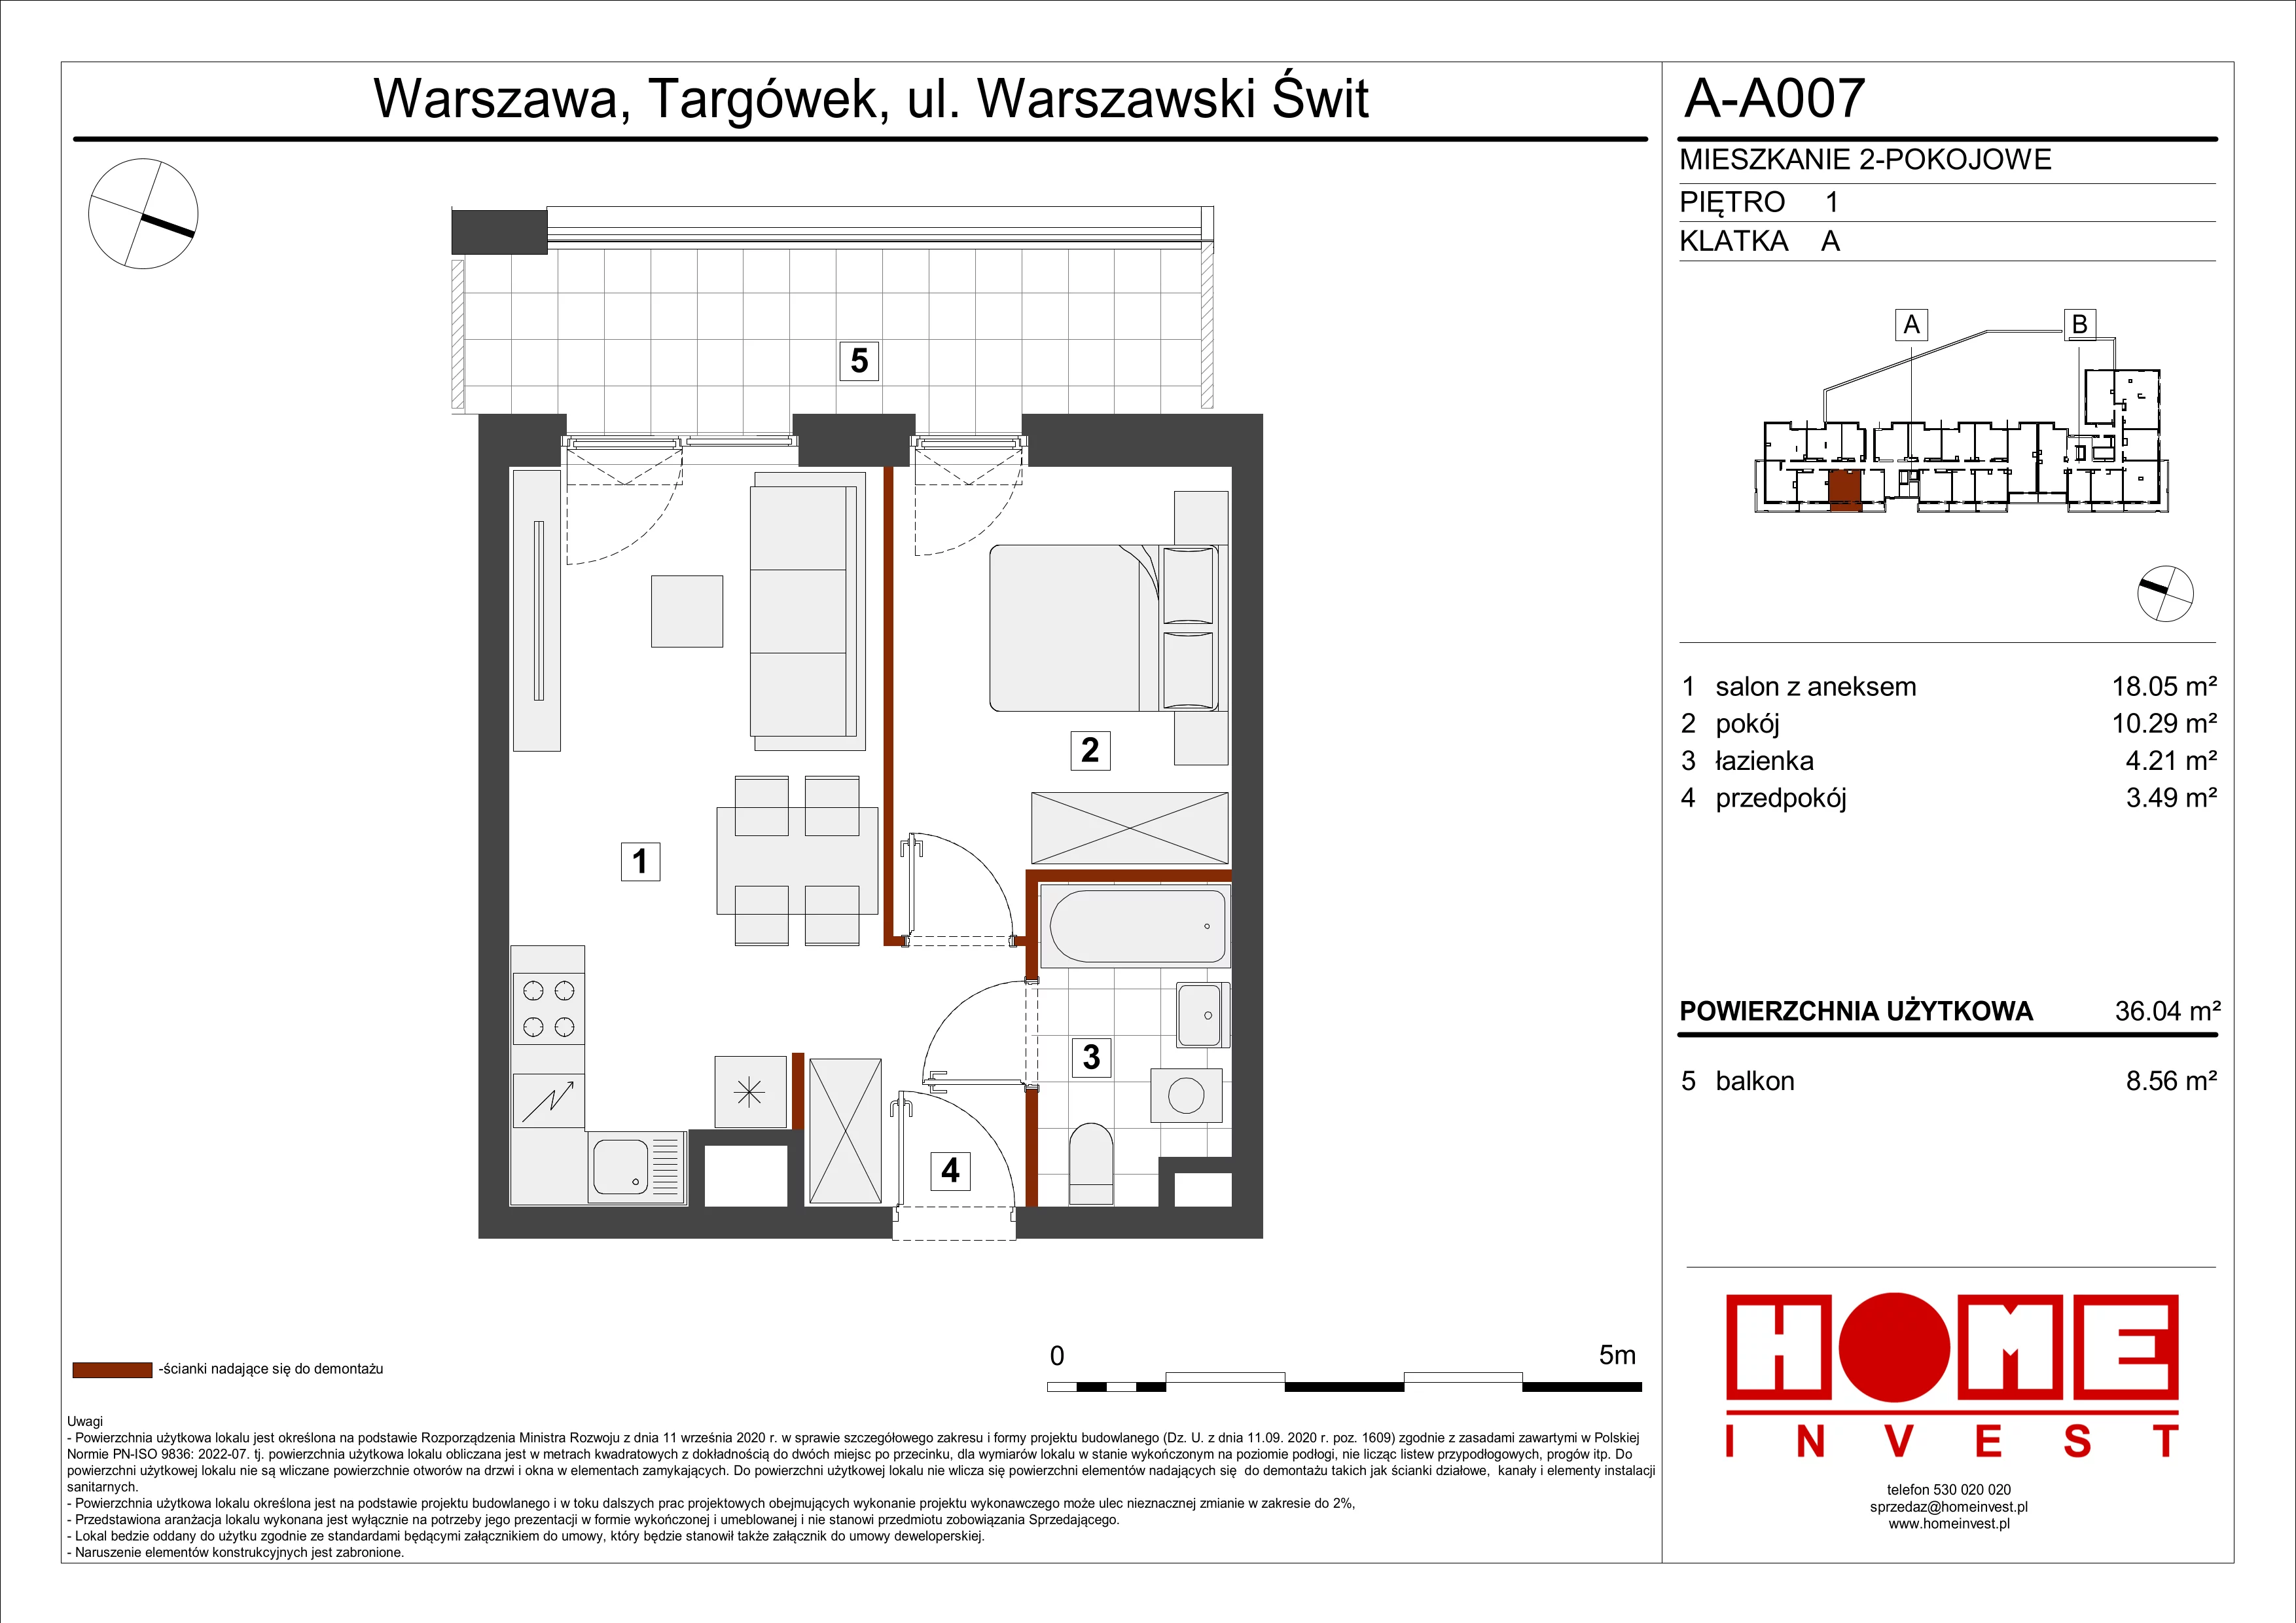 Mieszkanie 36,04 m², piętro 1, oferta nr A-A007, Warszawski Świt, Warszawa, Targówek, Bródno, ul. Warszawski Świt 5